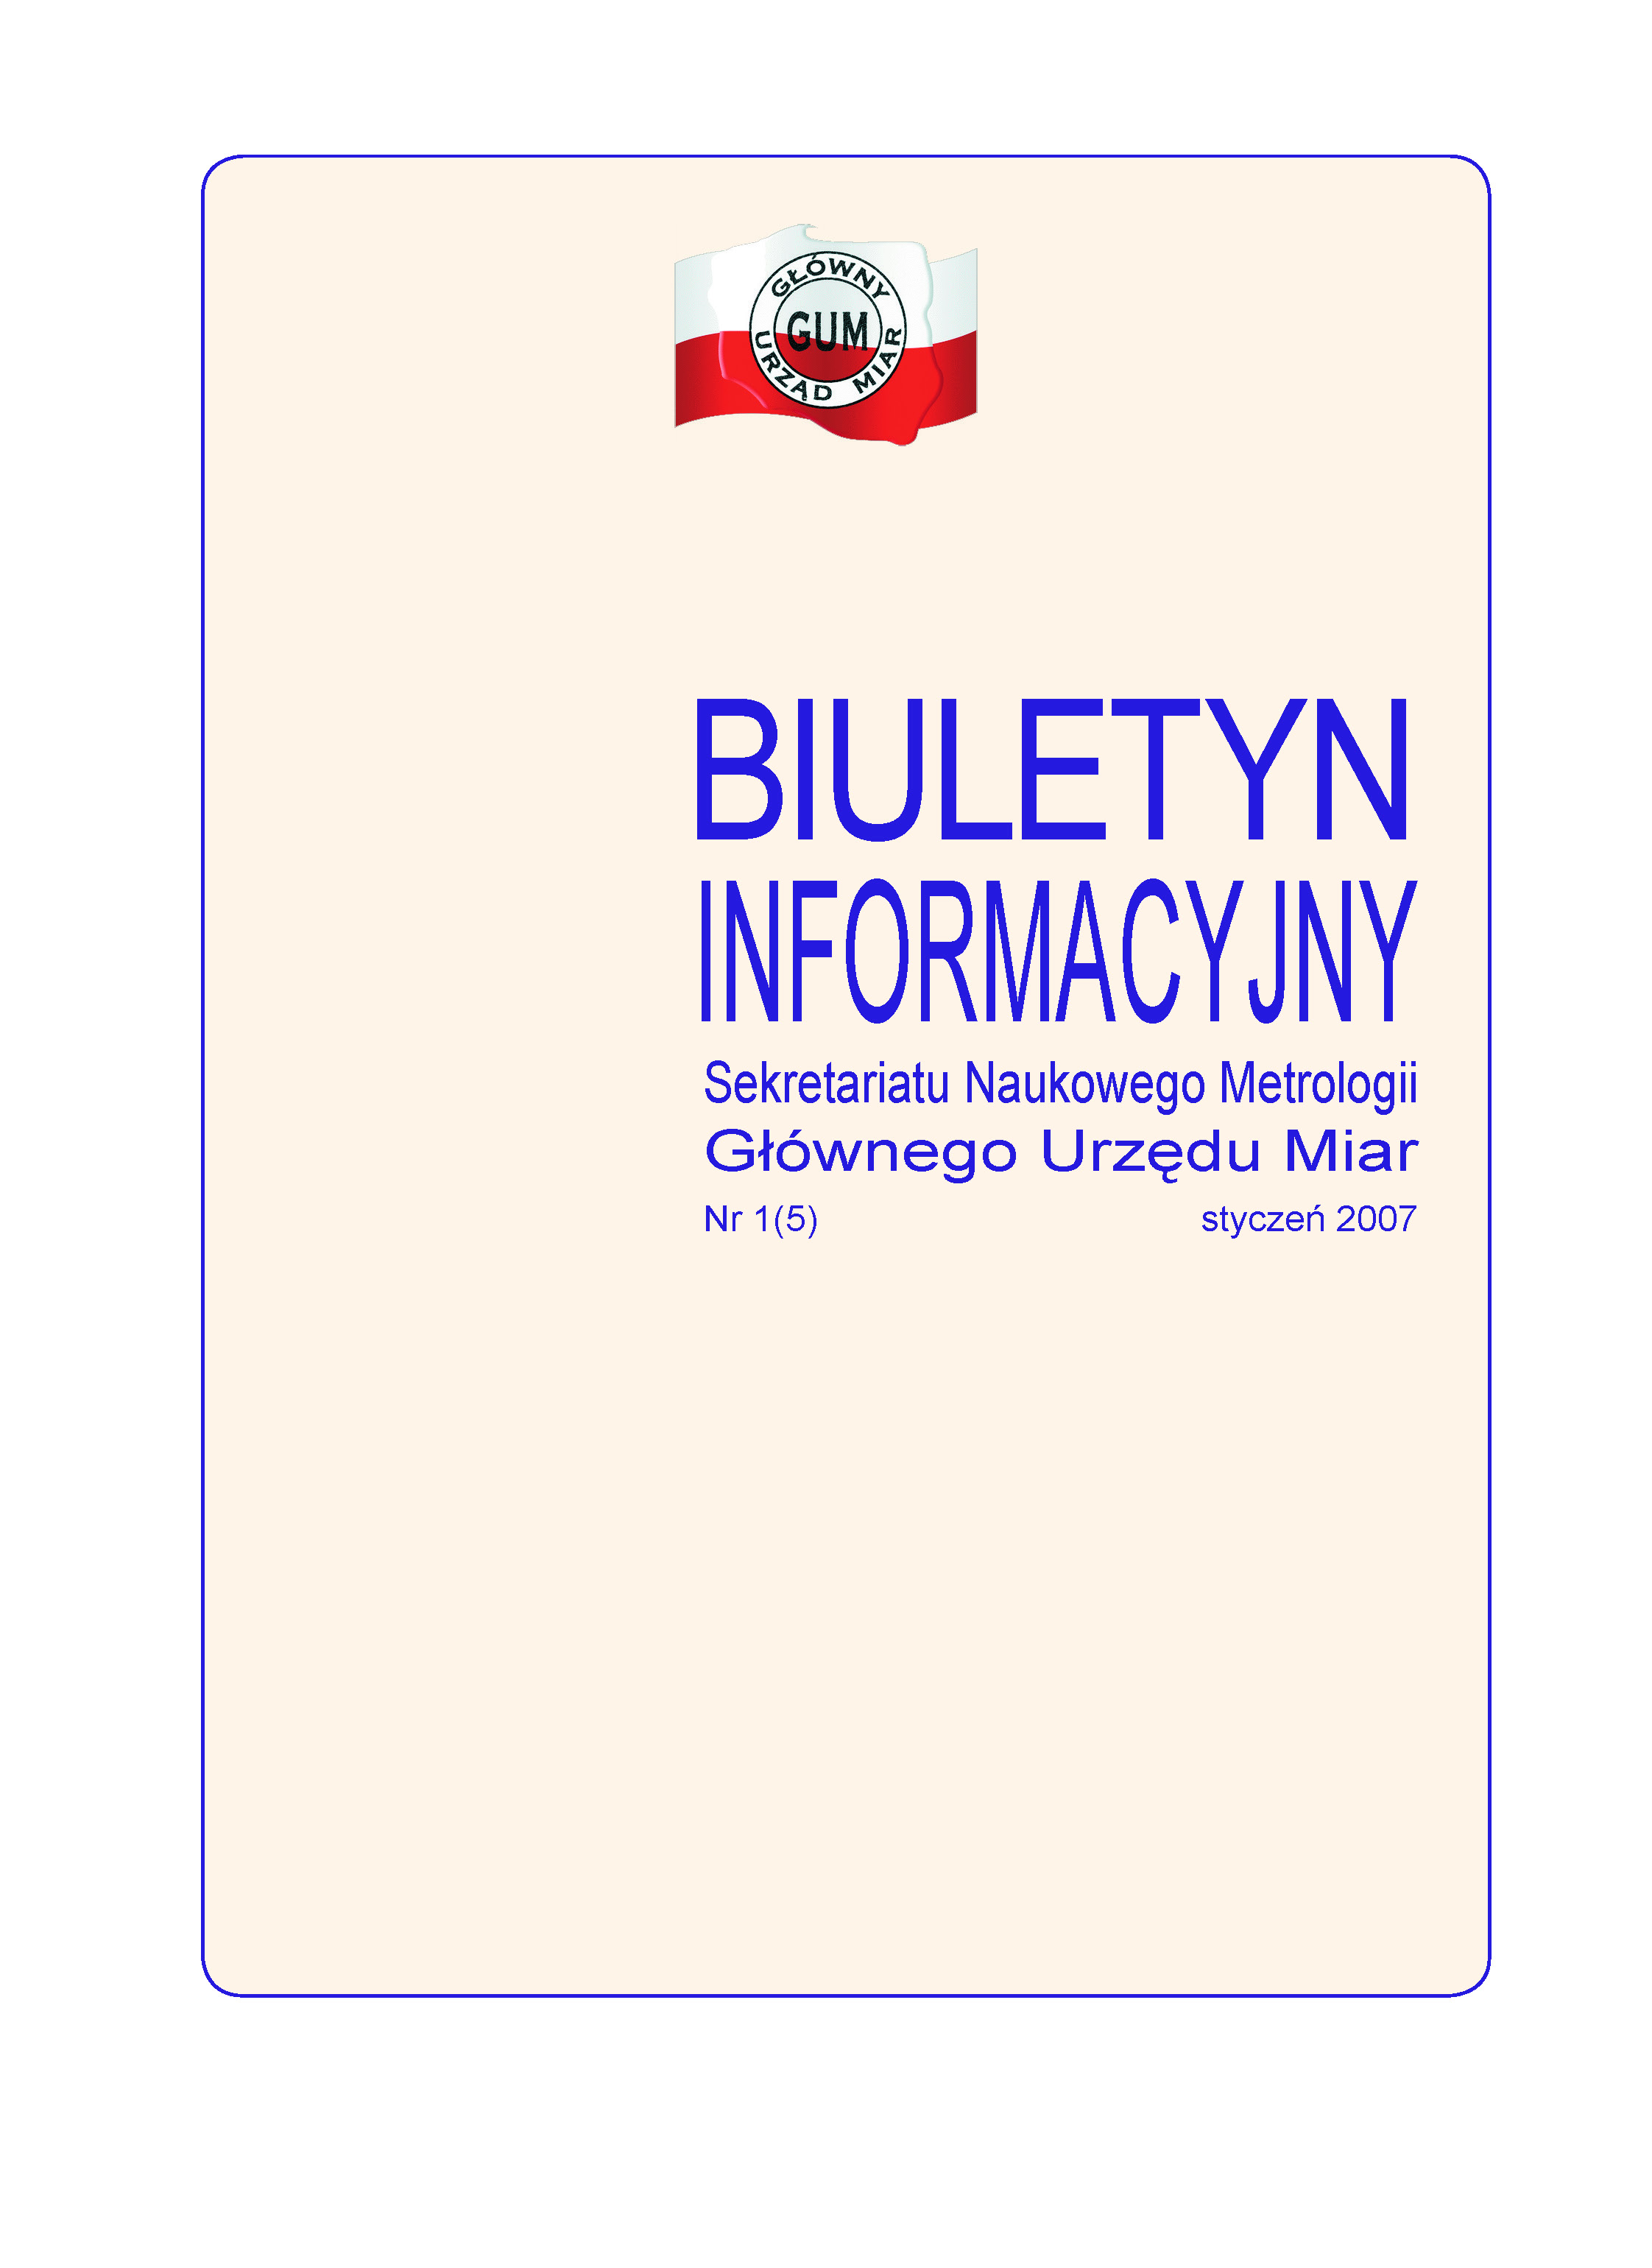 Okładka nr 1 z 2007 r. Biuletynu Informacyjny SNM. Na kremowym tle granatową czcionką napisany tytuł publikacji. U góry biało-czerwone logo GUM.